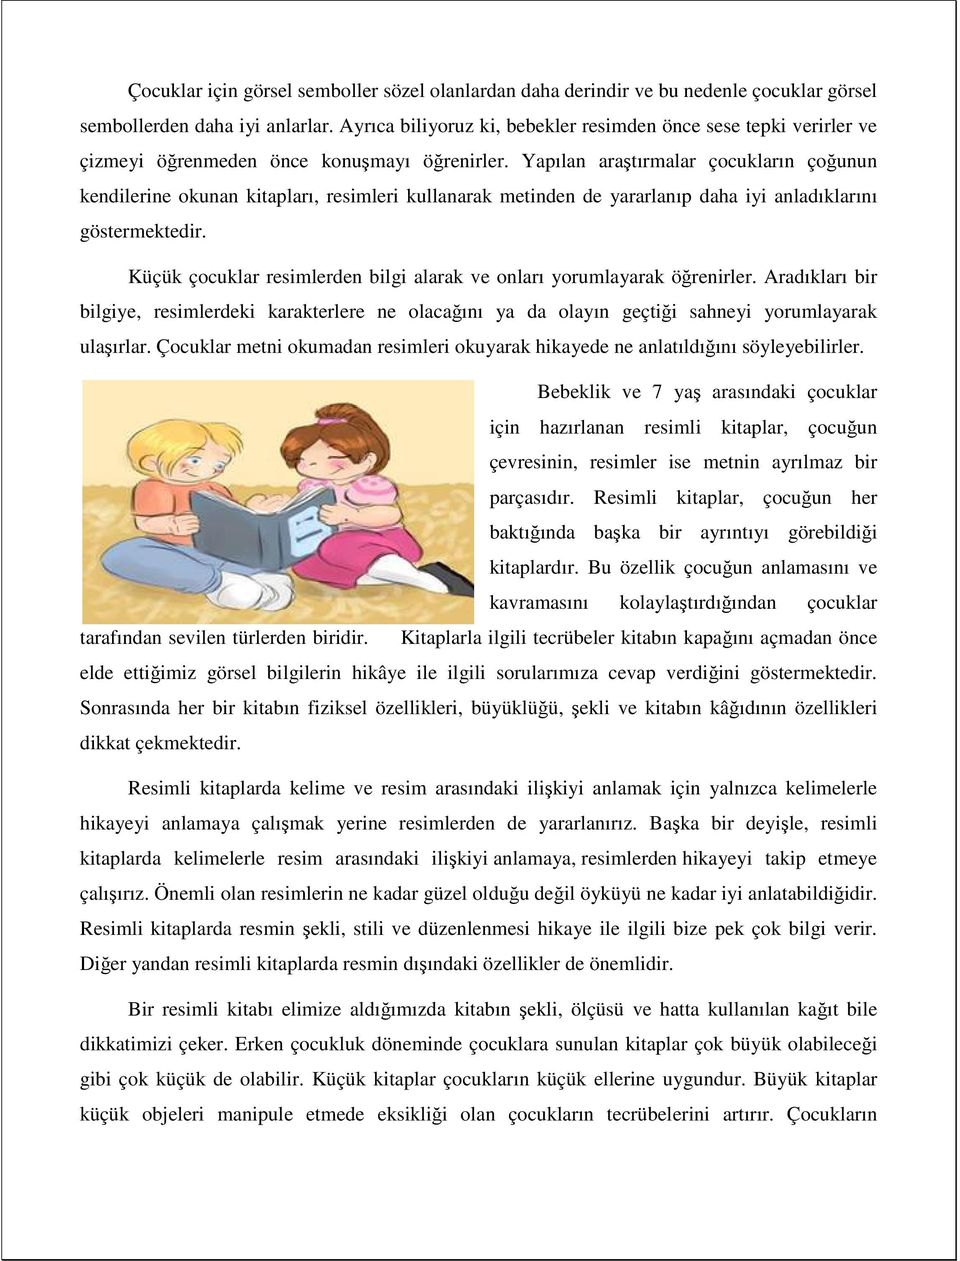 Yapılan araştırmalar çocukların çoğunun kendilerine okunan kitapları, resimleri kullanarak metinden de yararlanıp daha iyi anladıklarını göstermektedir.